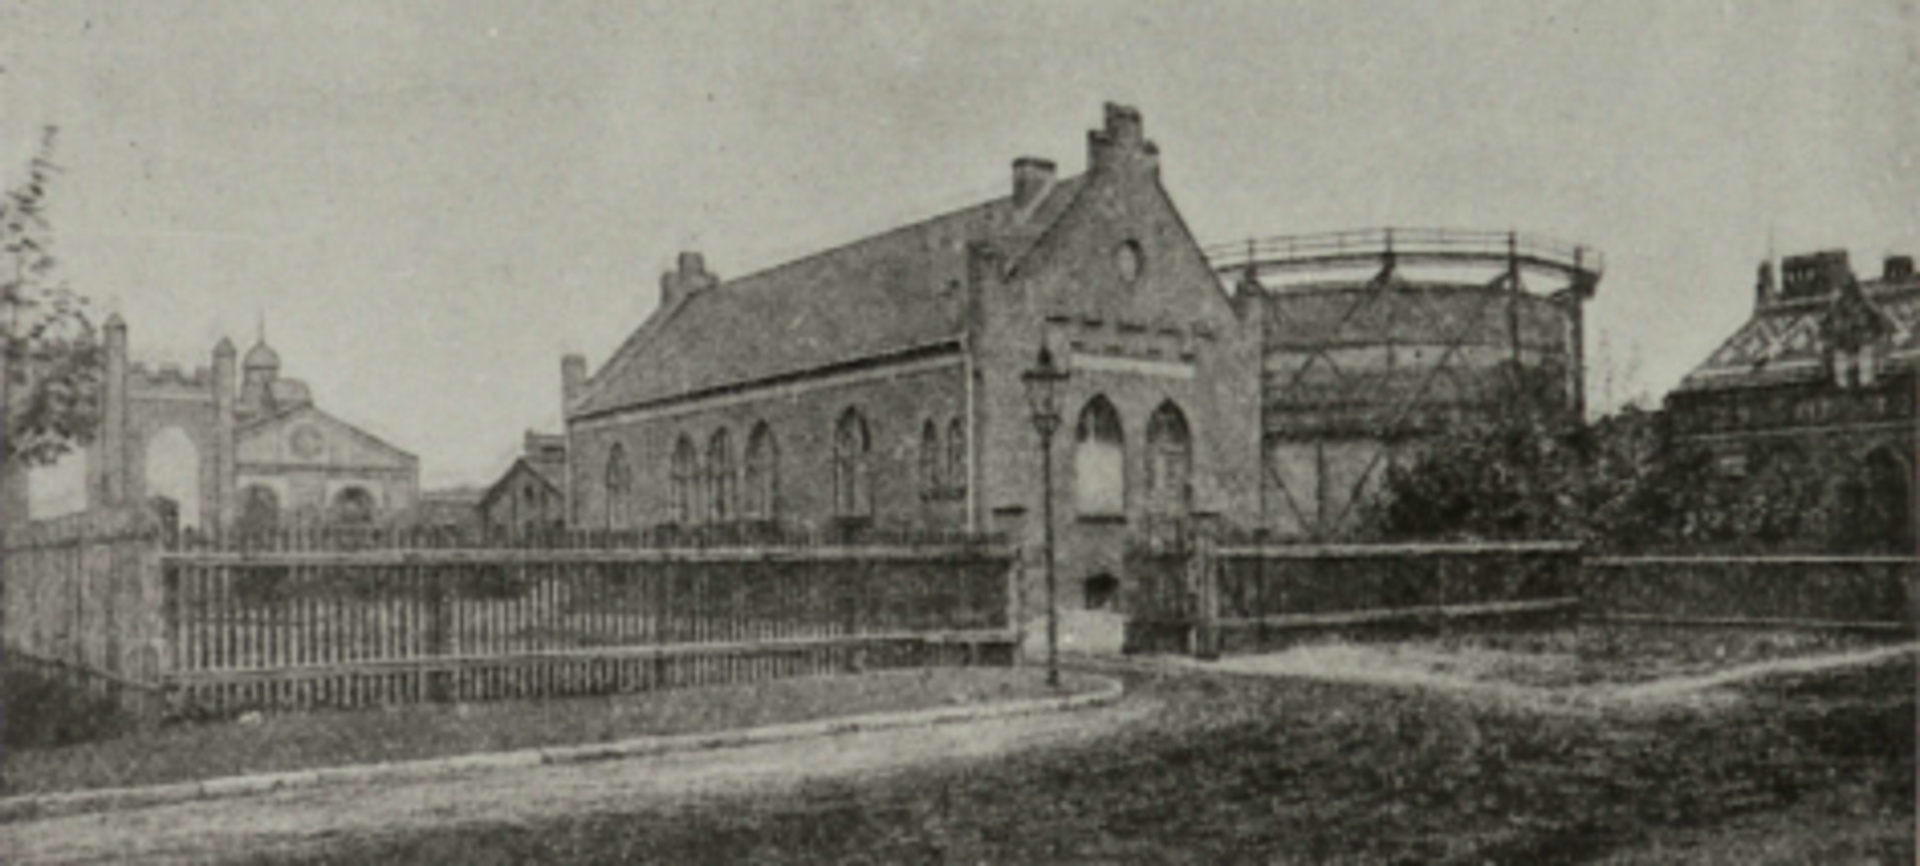 Gemeinde Gaswerk Köpenick, Ansicht von der Straße mit Gasbehälter, 1905